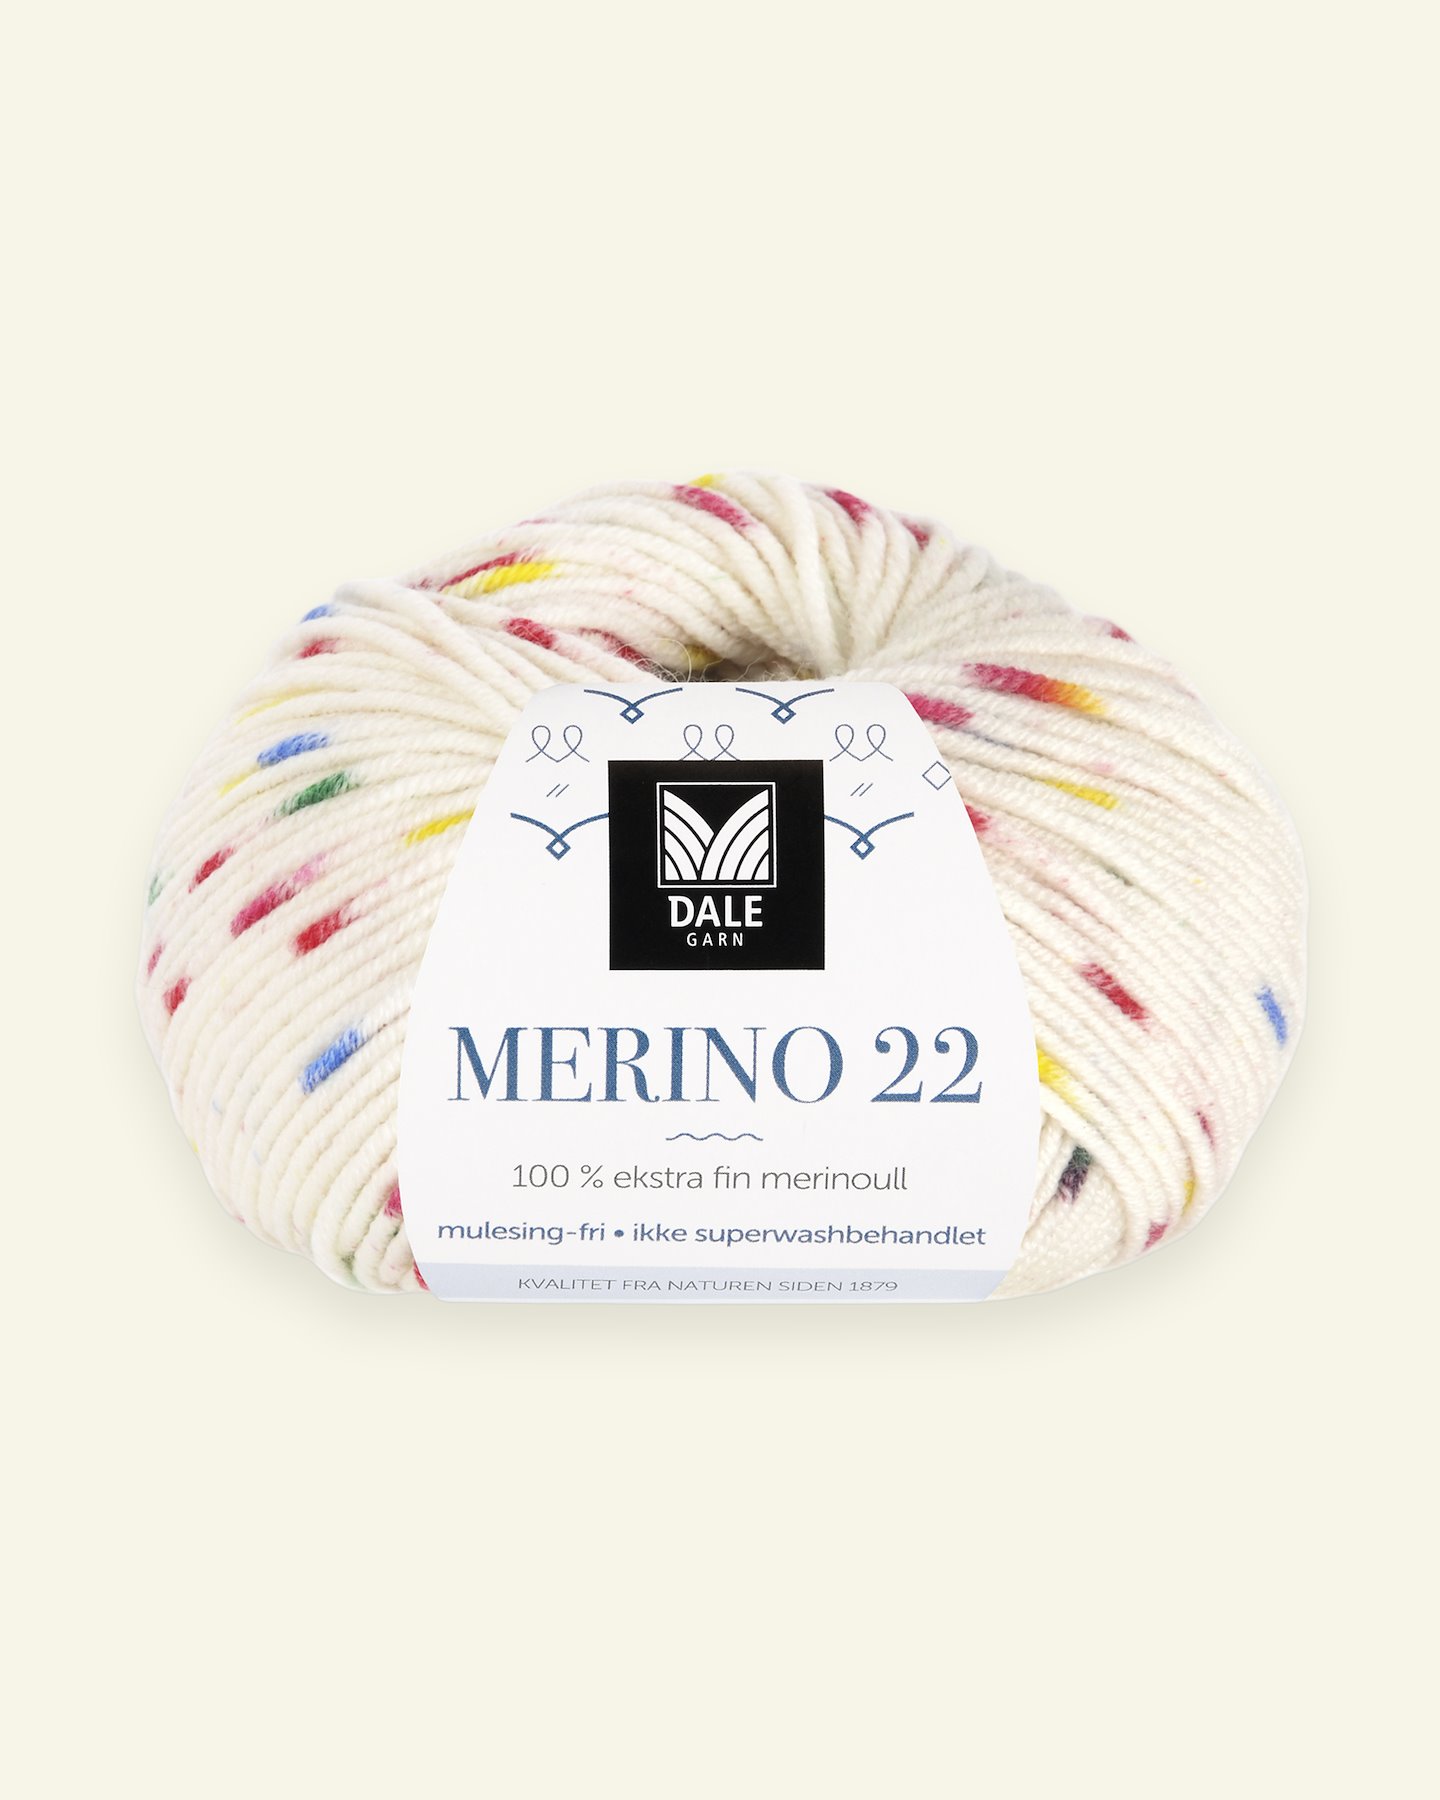 Dale Garn, 100% extra fine merino wool yarn, "Merino 22", Lollipop 90000395_pack